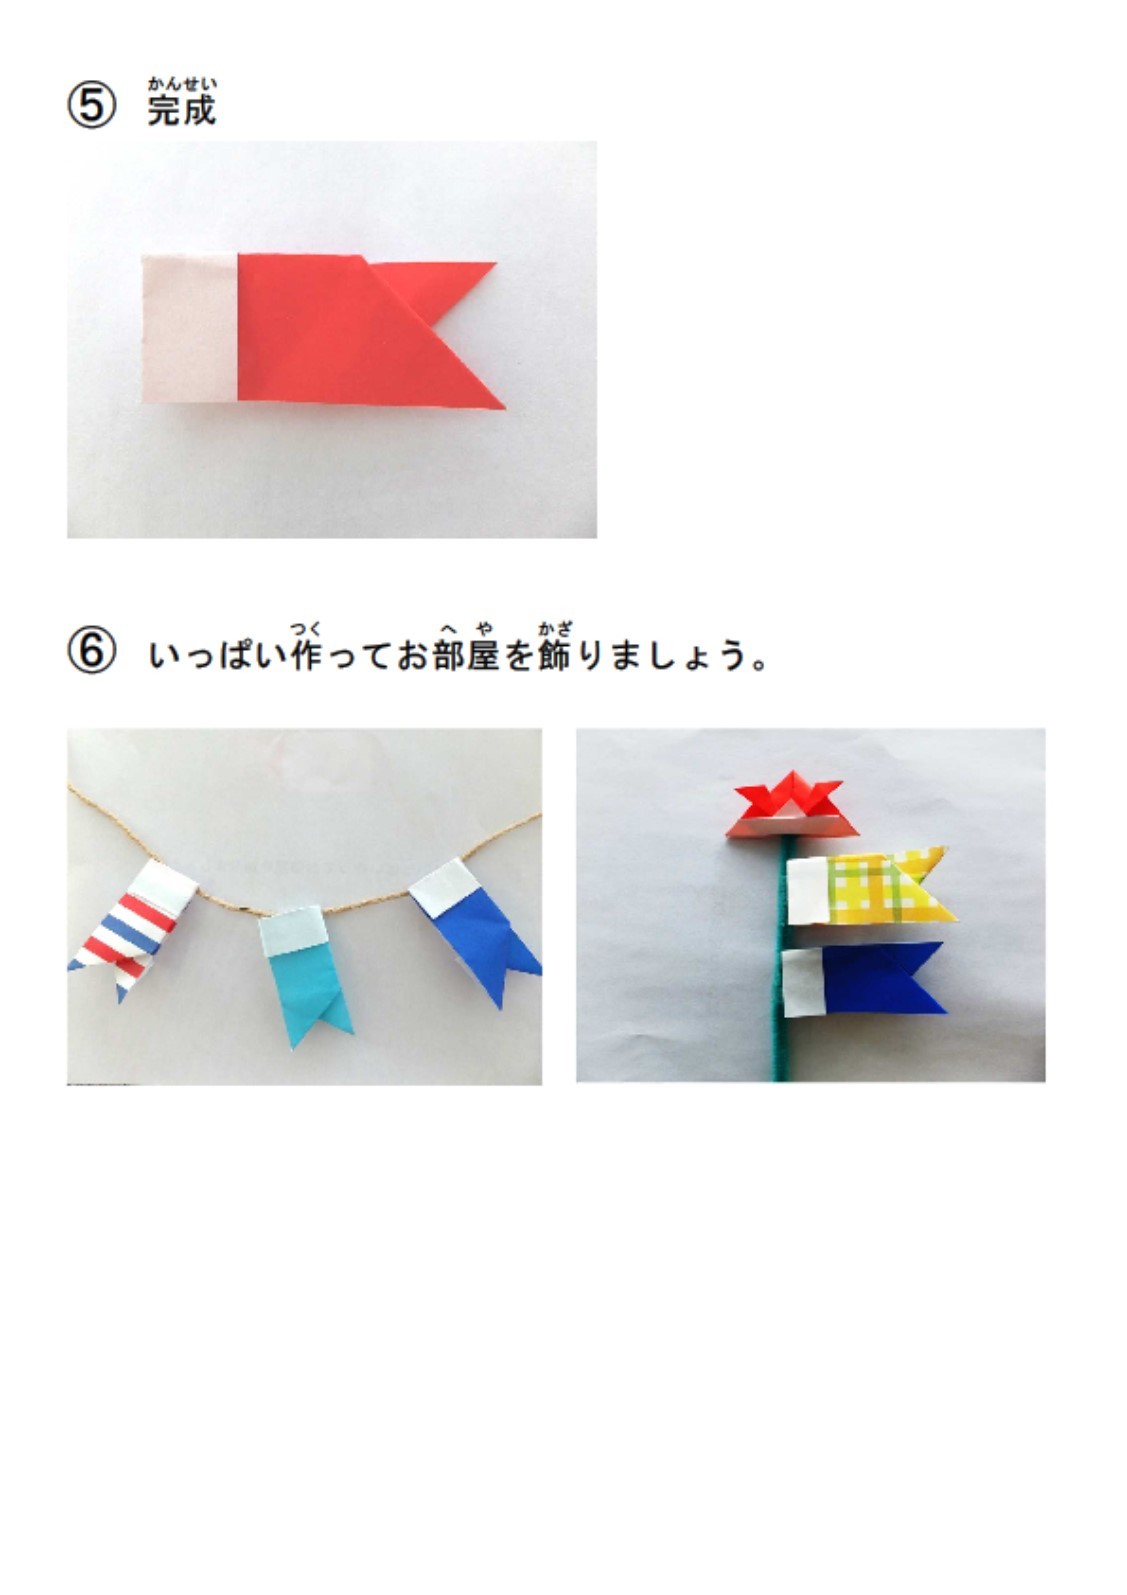 お家でかんたん 折り紙のこいのぼりをつくろう 島田市公式ホームページ